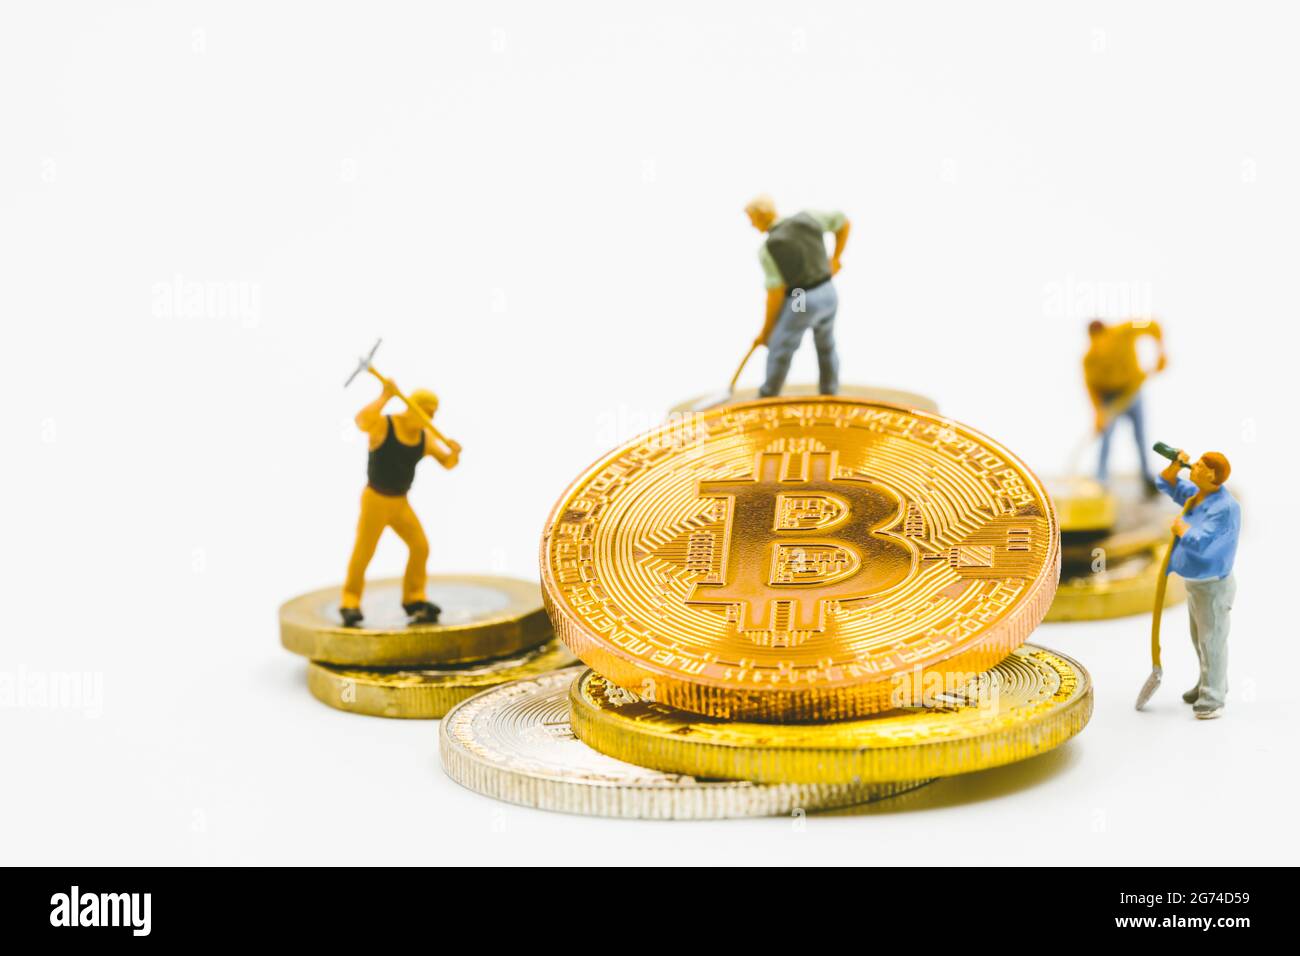 Bitcoin mineurs modèle de travailleur miniature creusant de l'argent numérique ou crypto-monnaie concept. Personnes travaillant sur des pièces bitcoins crypto monnaie sur fond blanc Banque D'Images